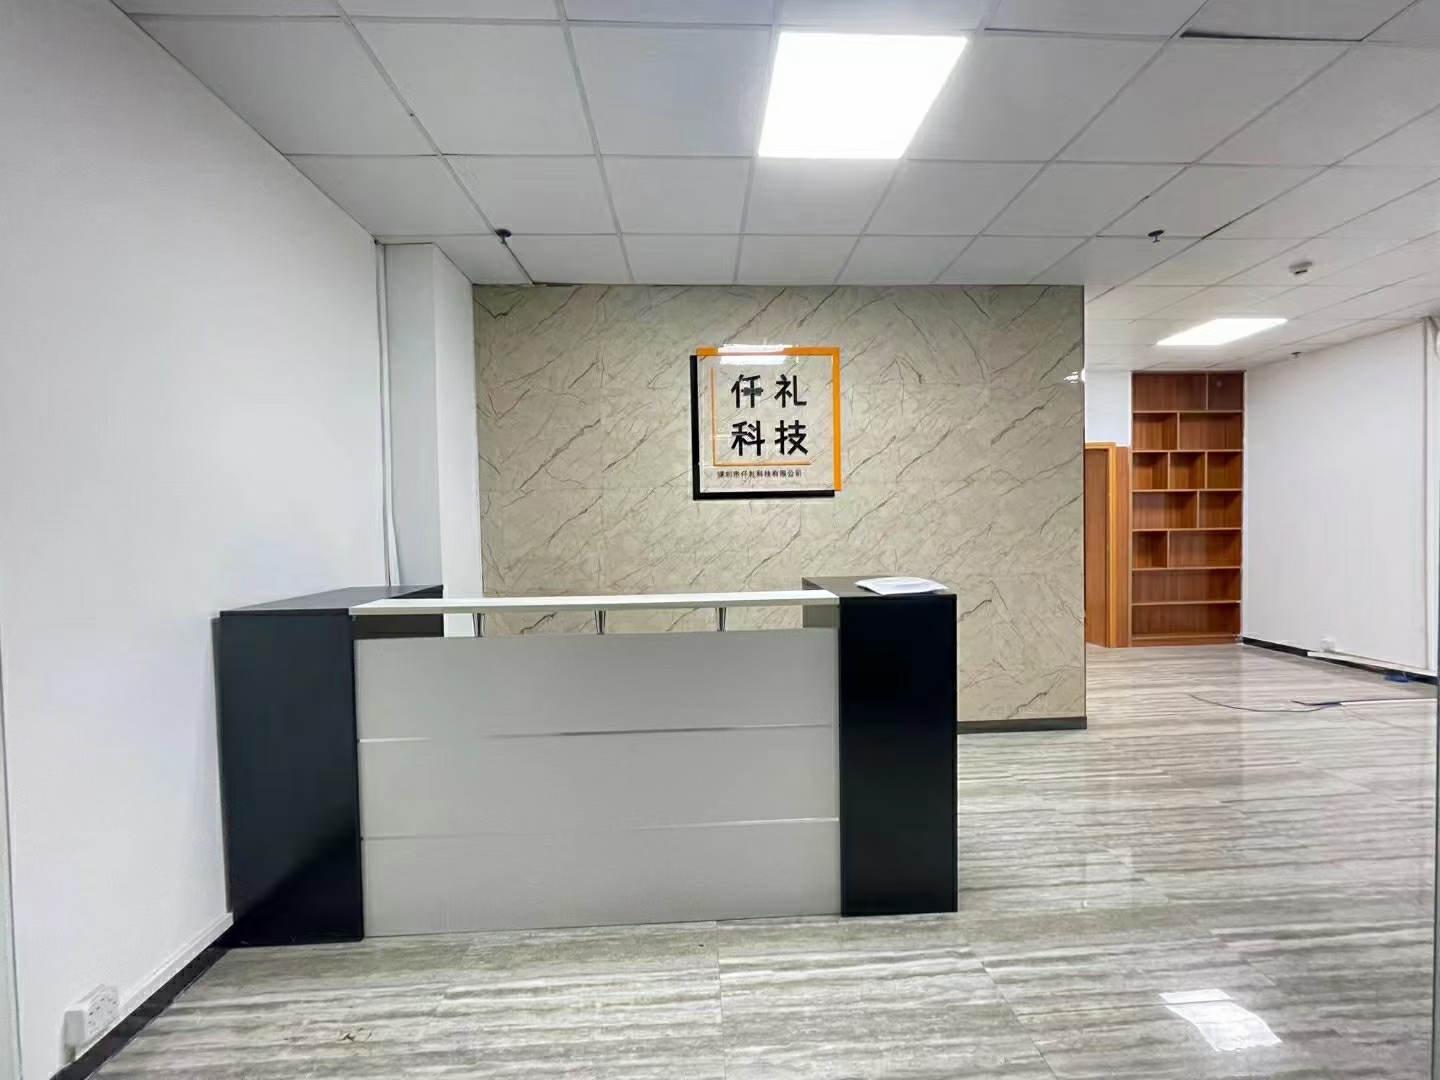 龙华东环二路新出小面积100平精装修办公室出租